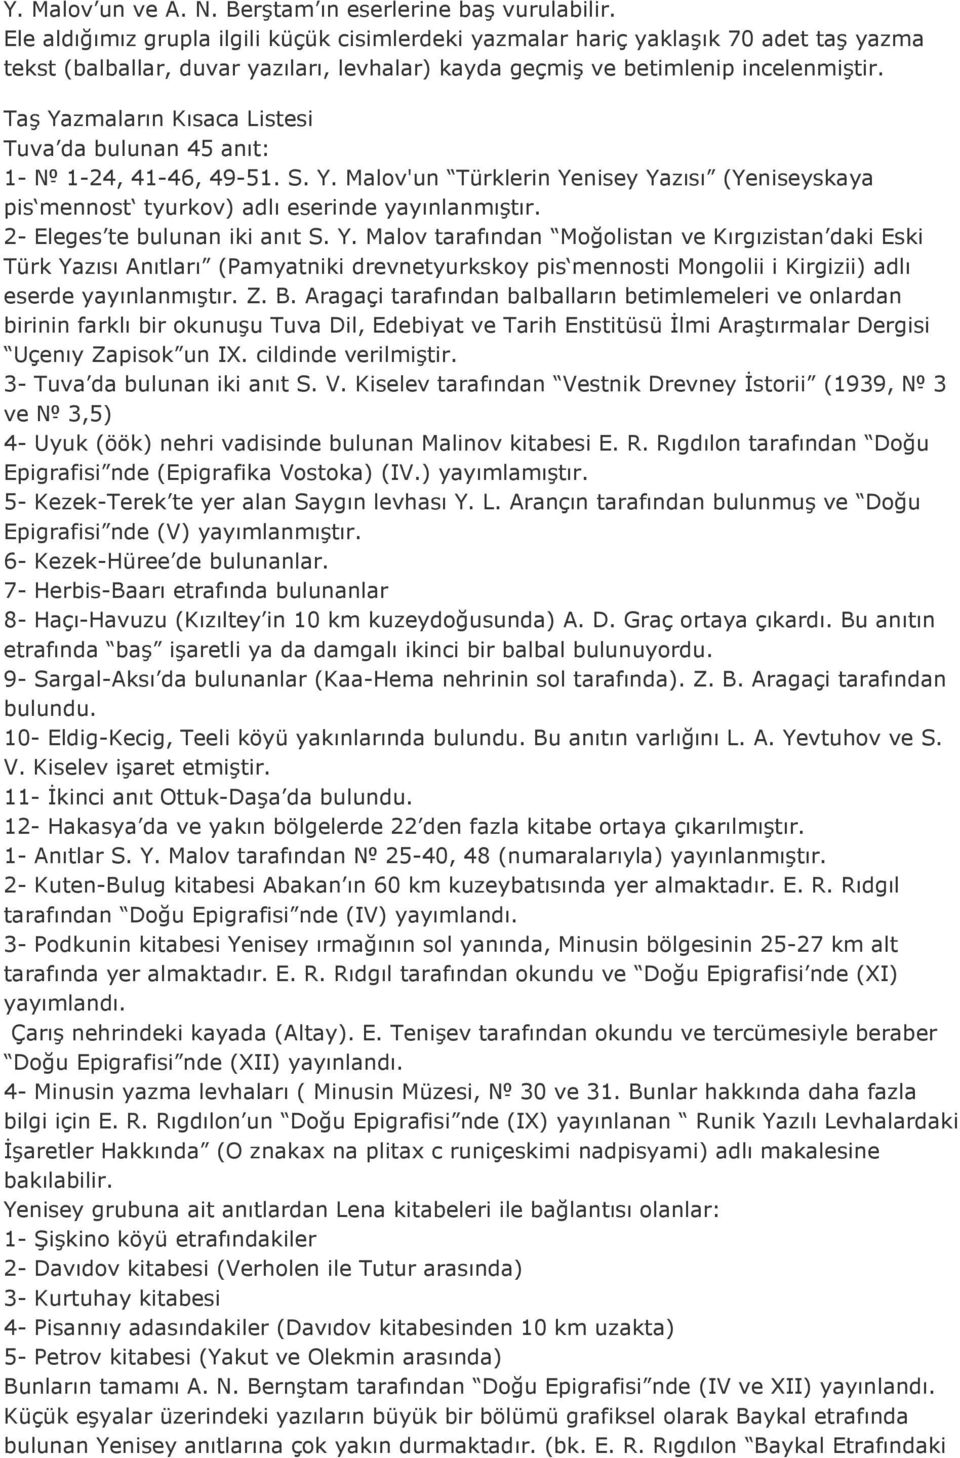 Taş Yazmaların Kısaca Listesi Tuva da bulunan 45 anıt: 1-1-24, 41-46, 49-51. S. Y. Malov'un Türklerin Yenisey Yazısı (Yeniseyskaya pis mennost tyurkov) adlı eserinde yayınlanmıştır.